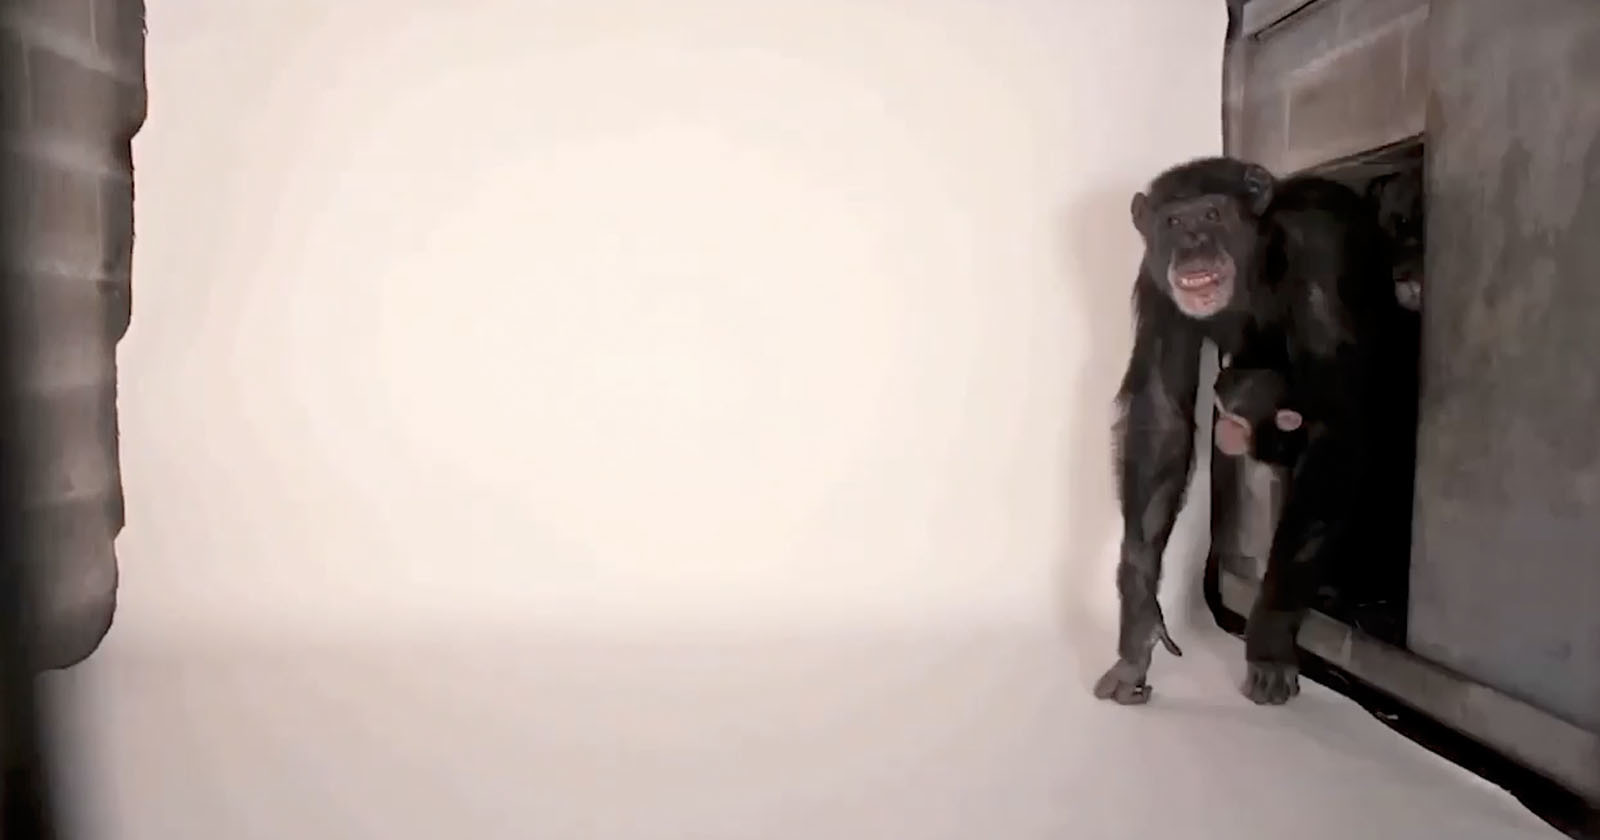  how chimpanzee ruined photographer makeshift studio 